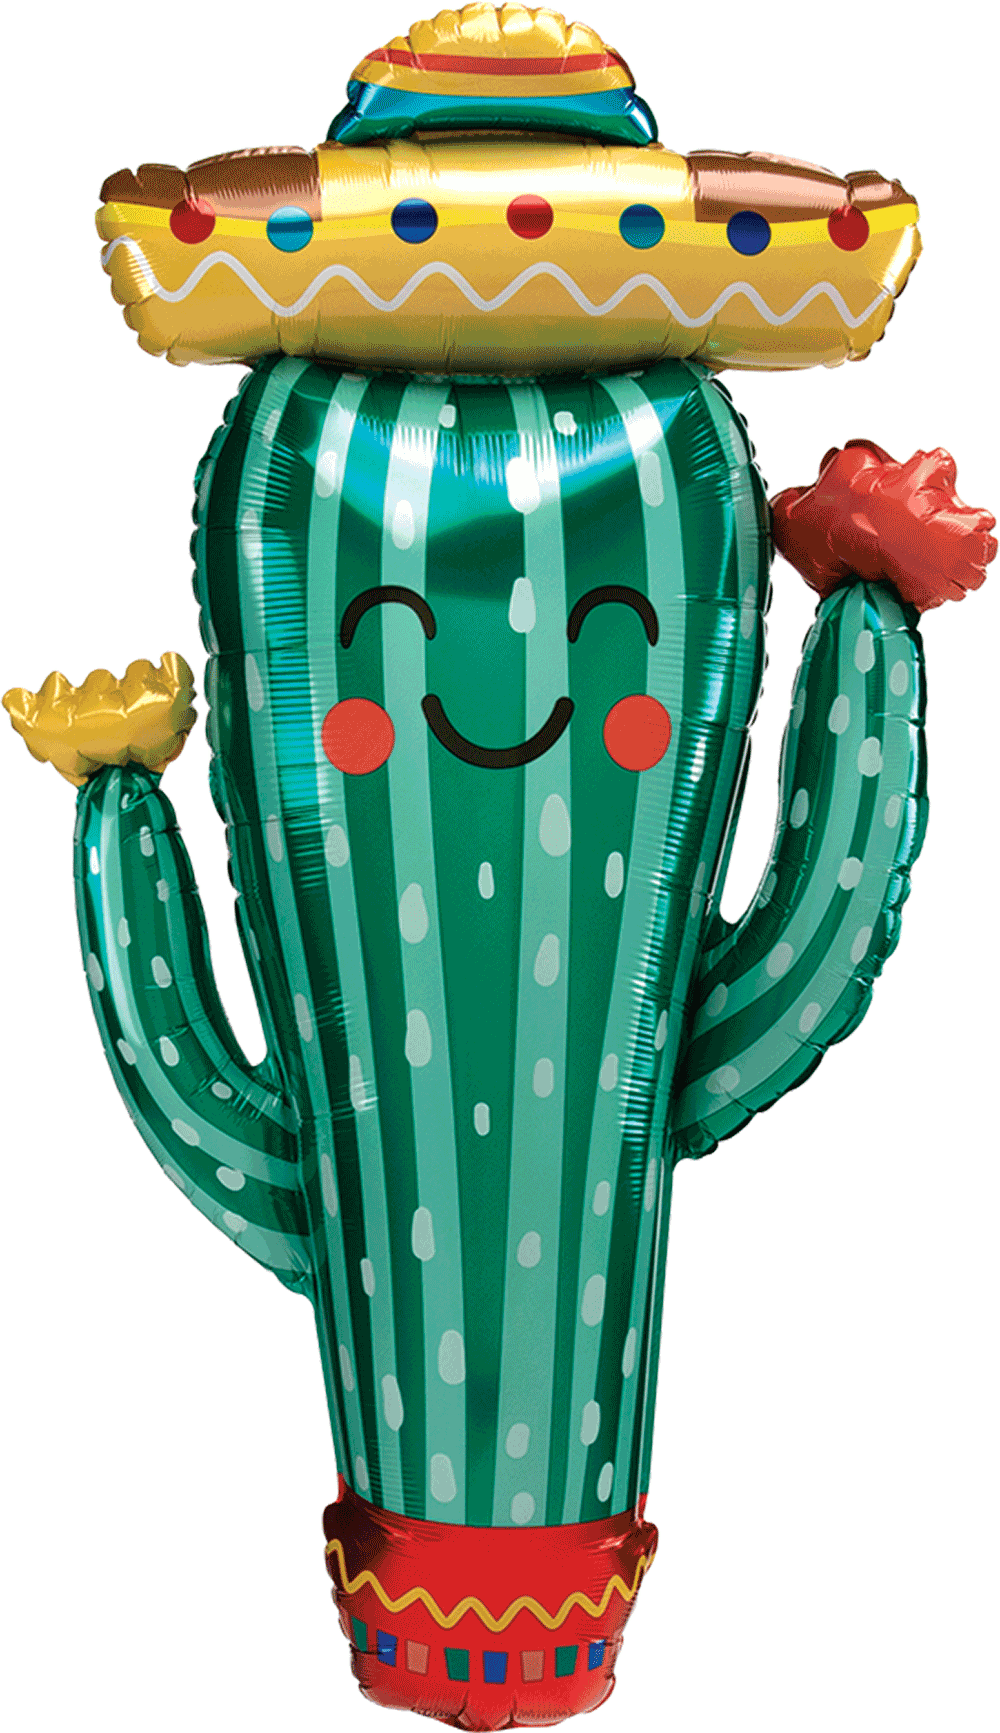 Fiesta Cactus